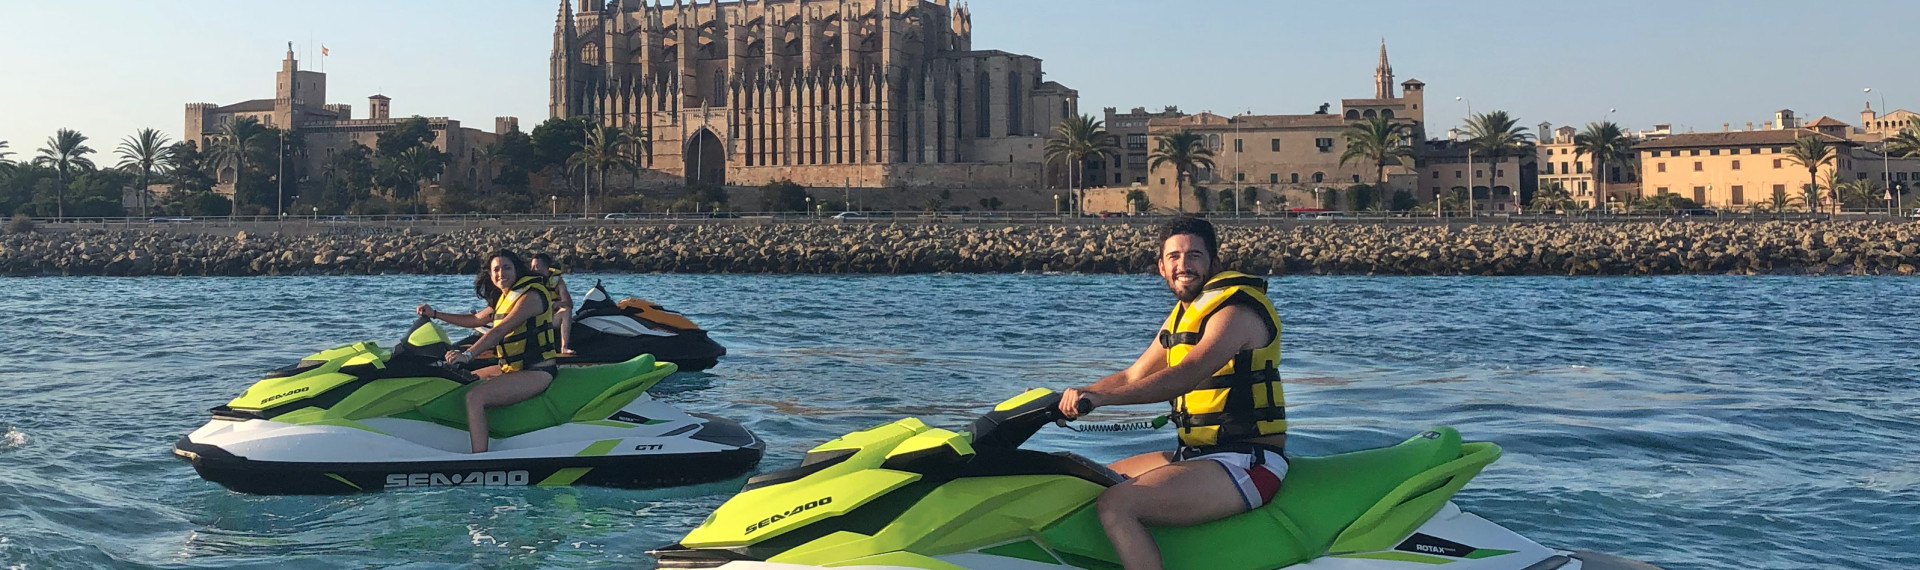 Jetski Mallorca | Der Action-Spaß auf dem Mittelmeer | Pissup Reisen